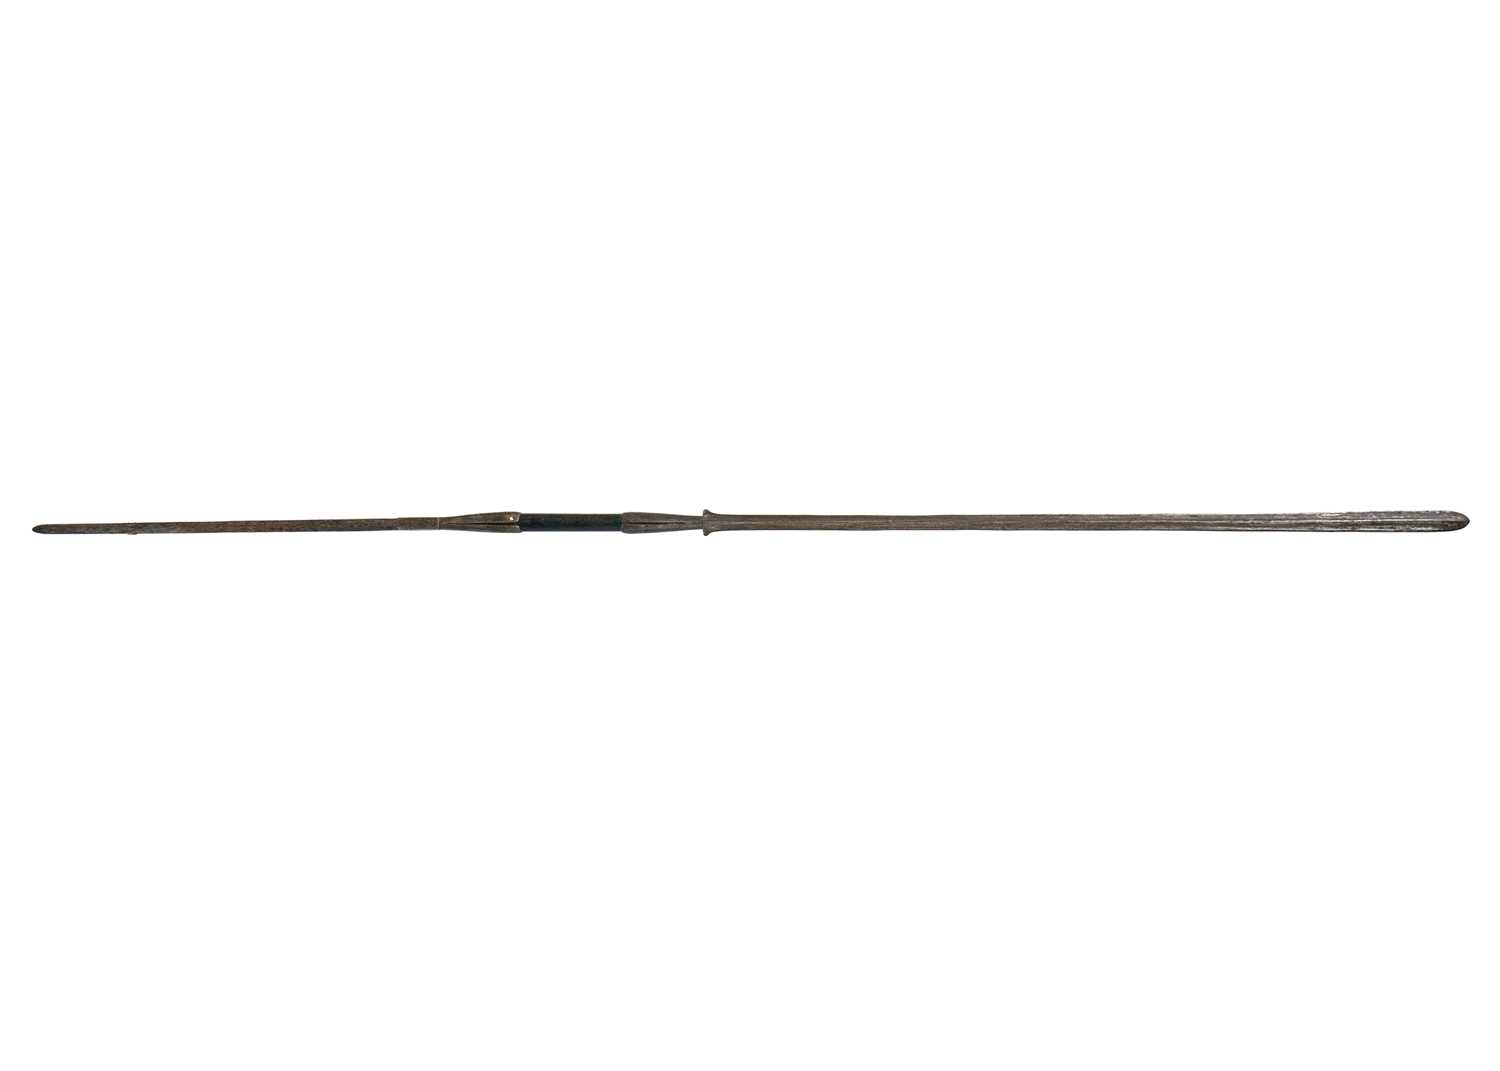 A Masai lion spear.